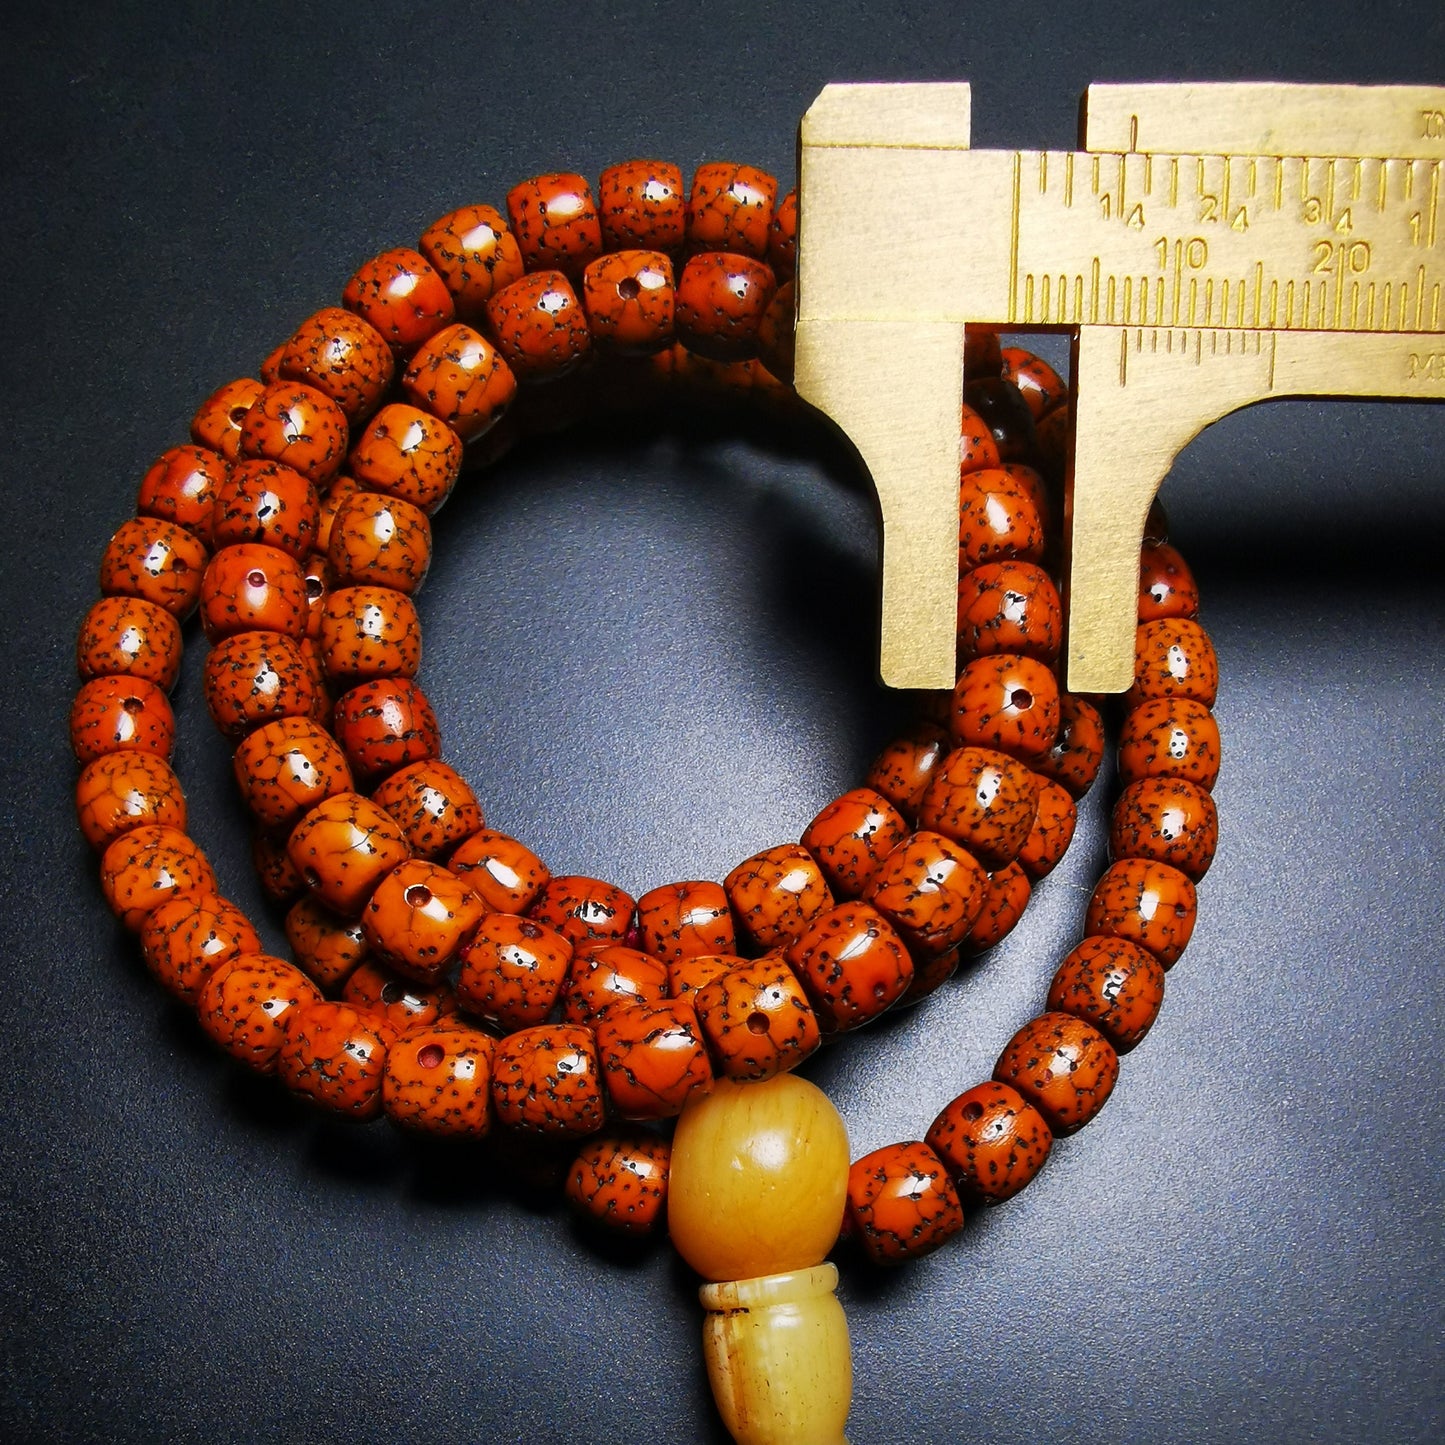 Gandhanra Old Tibetan Mala Beads Necklace, Star Moon Bodhi Seed Prayer Beads Bracelet